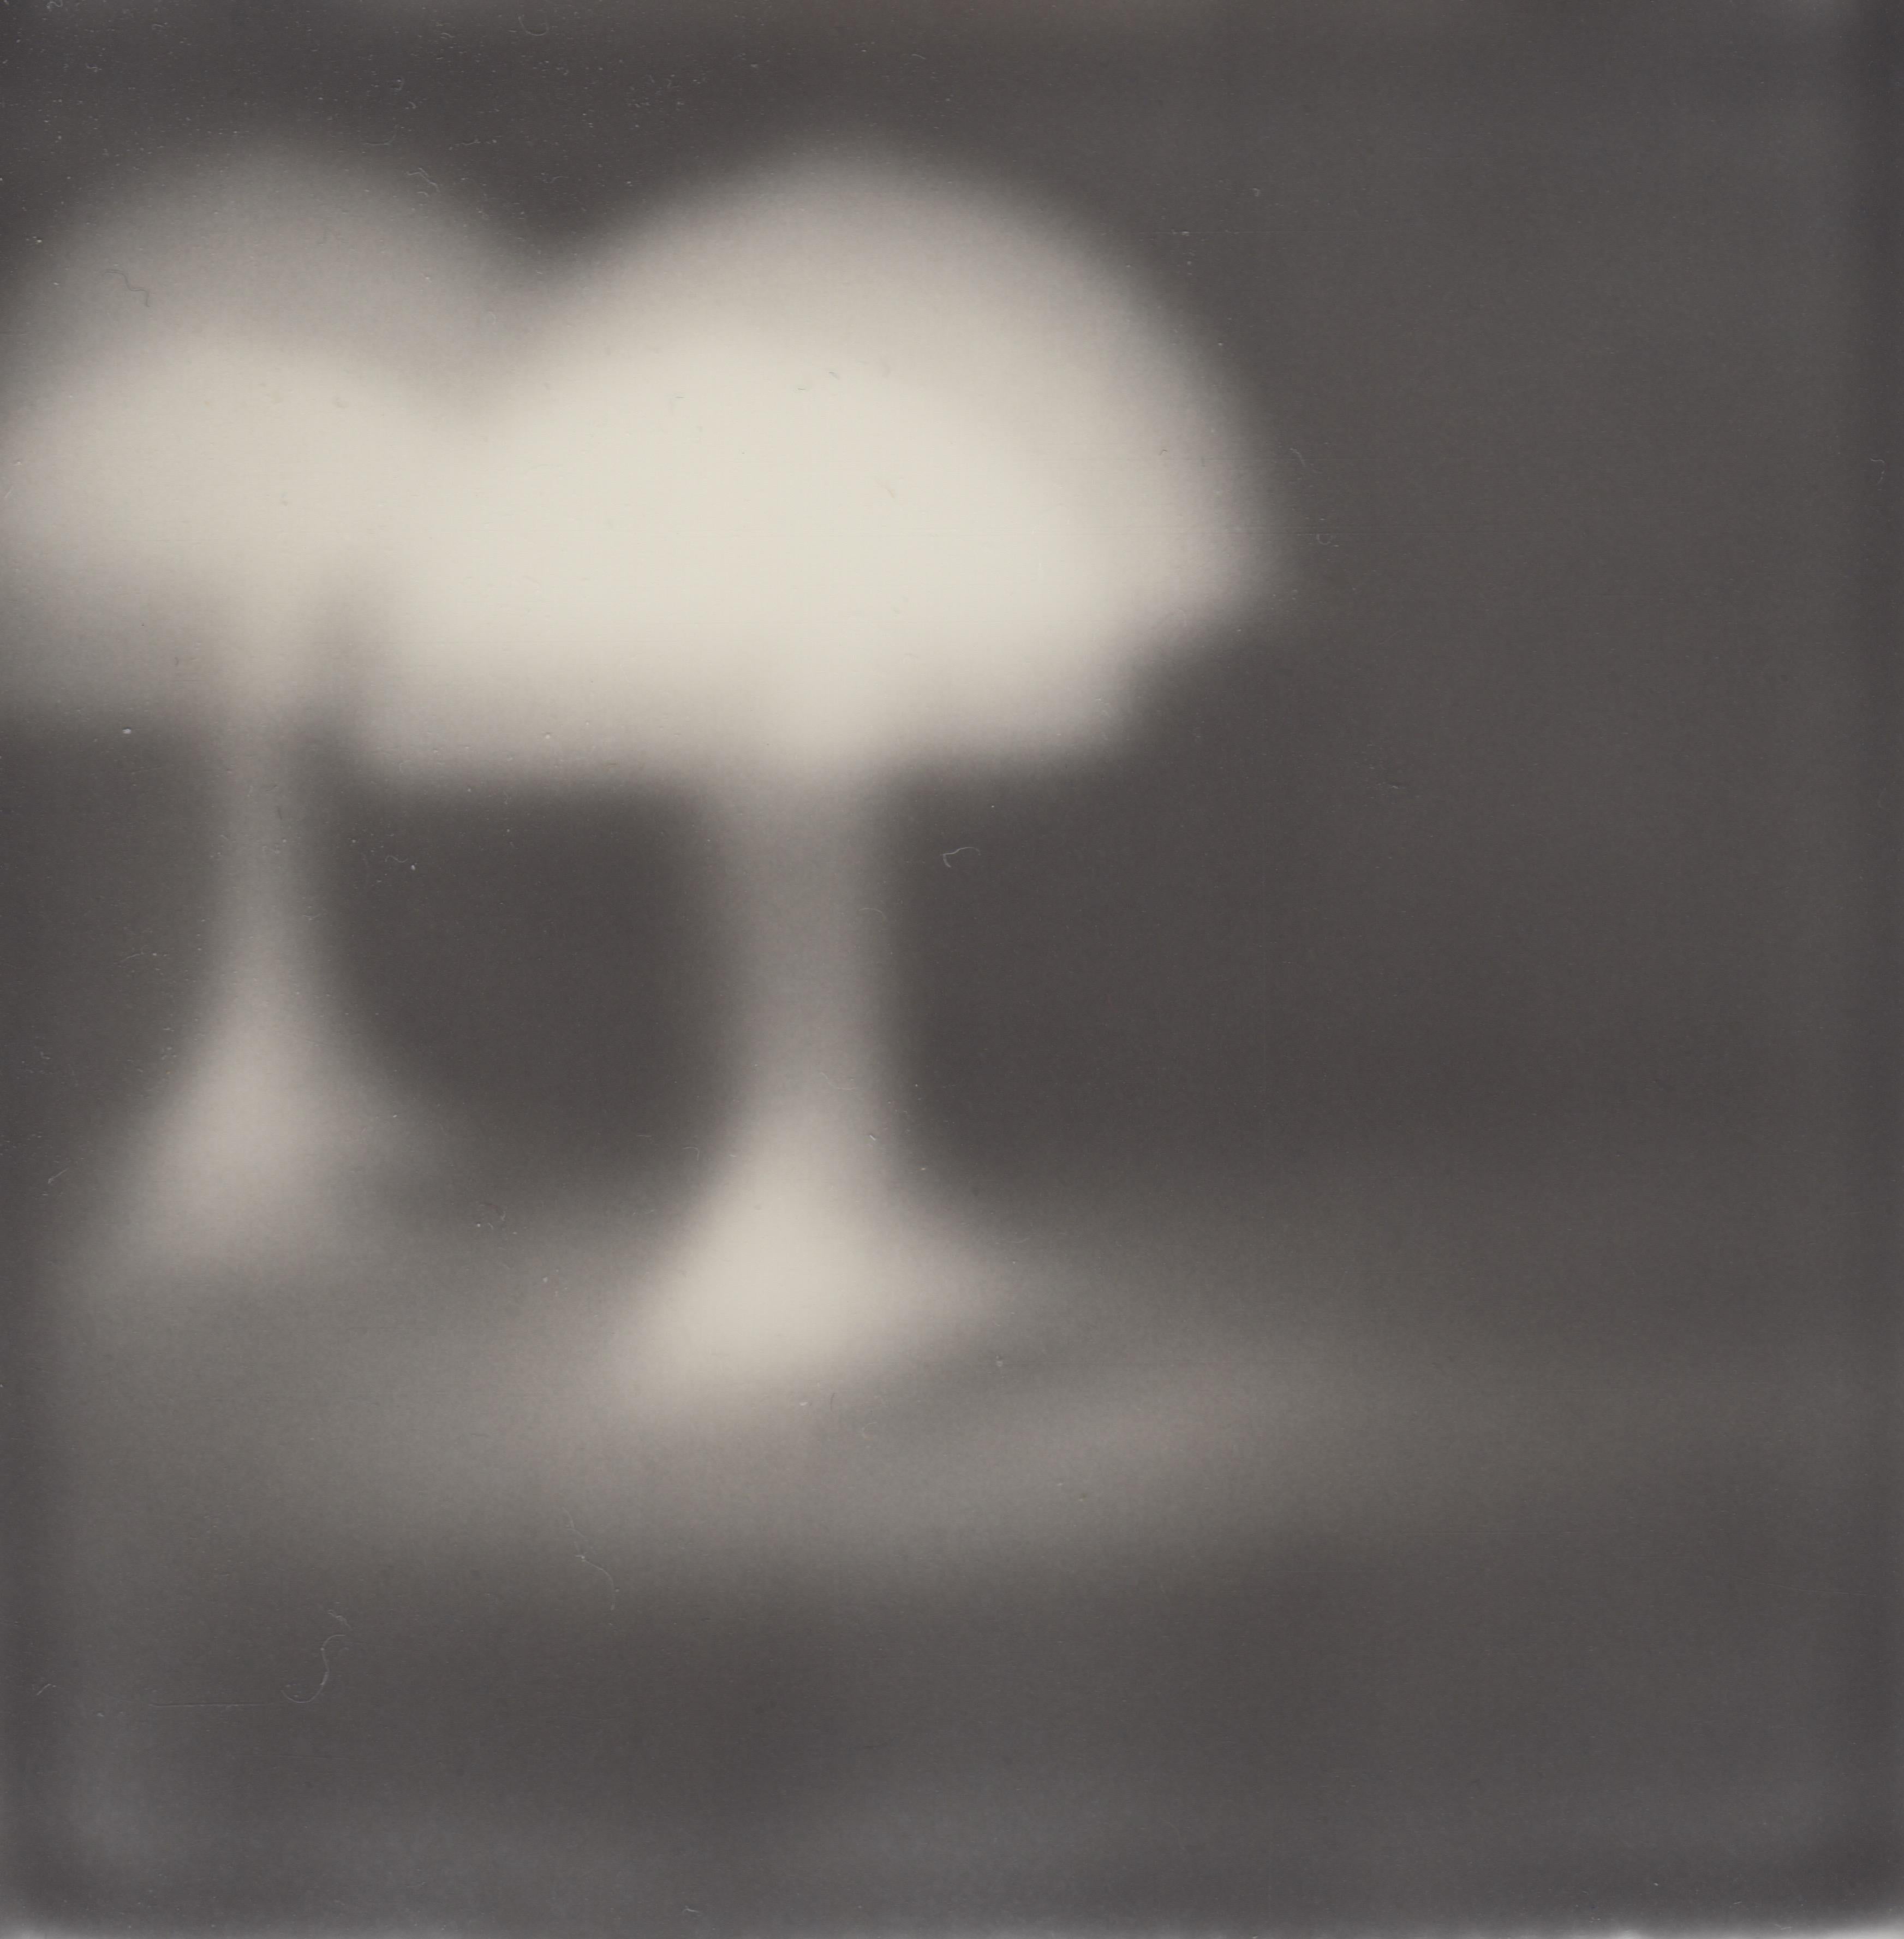 Waiting At The Bar - Nature morte - Impression photographique de film encadrée en noir et blanc